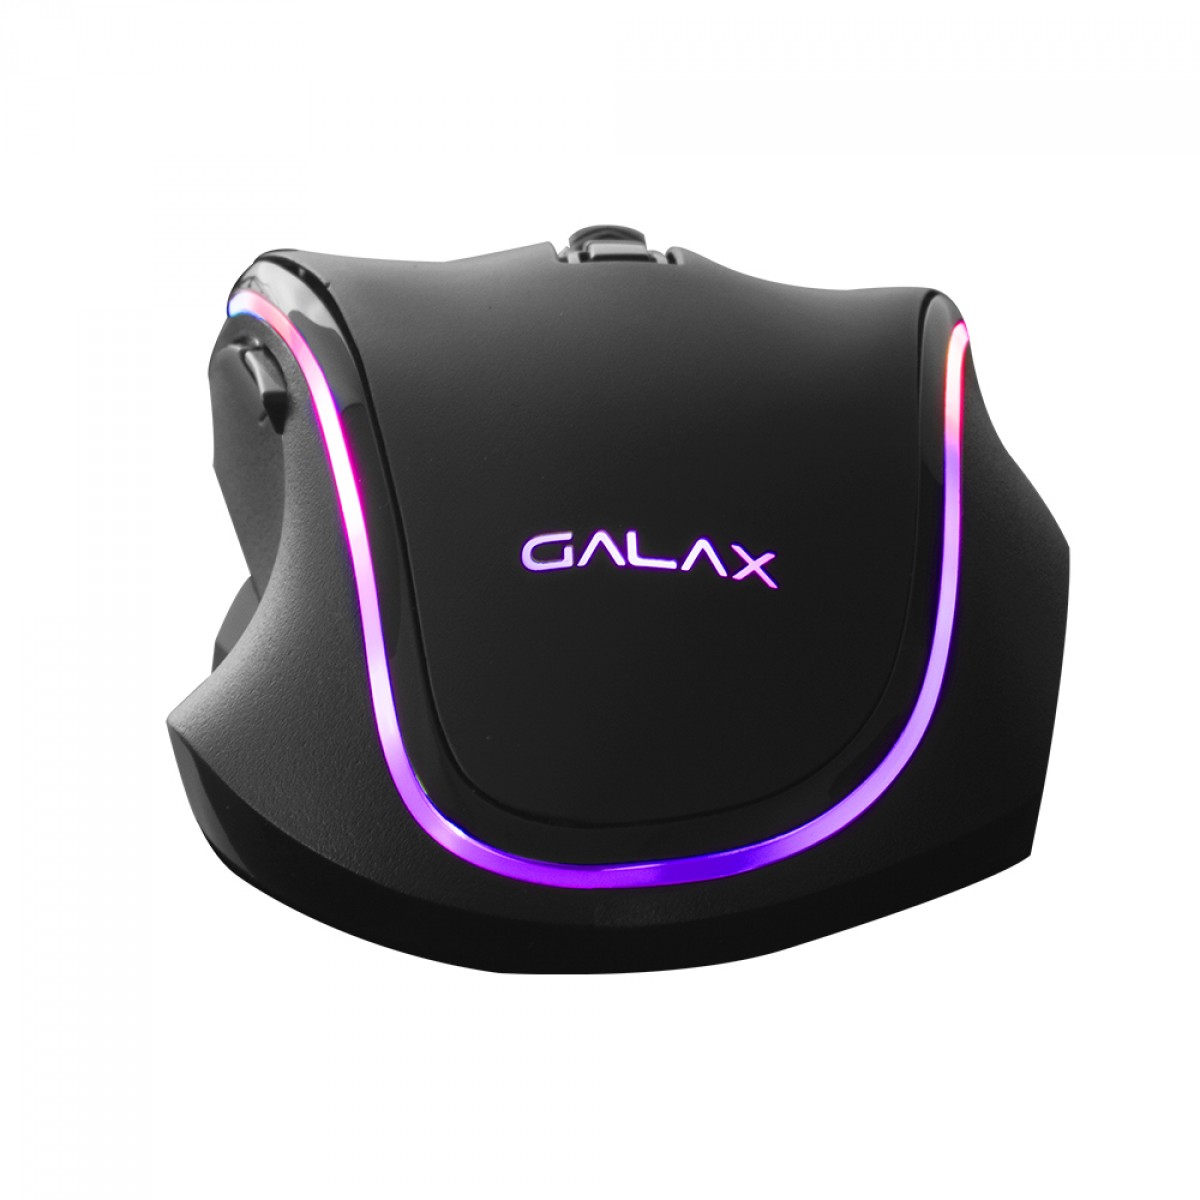 Mouse Gamer Galax Slider-01, 7200 DPI, 8 Botões, RGB, Black, MGS01IA18RG2B0